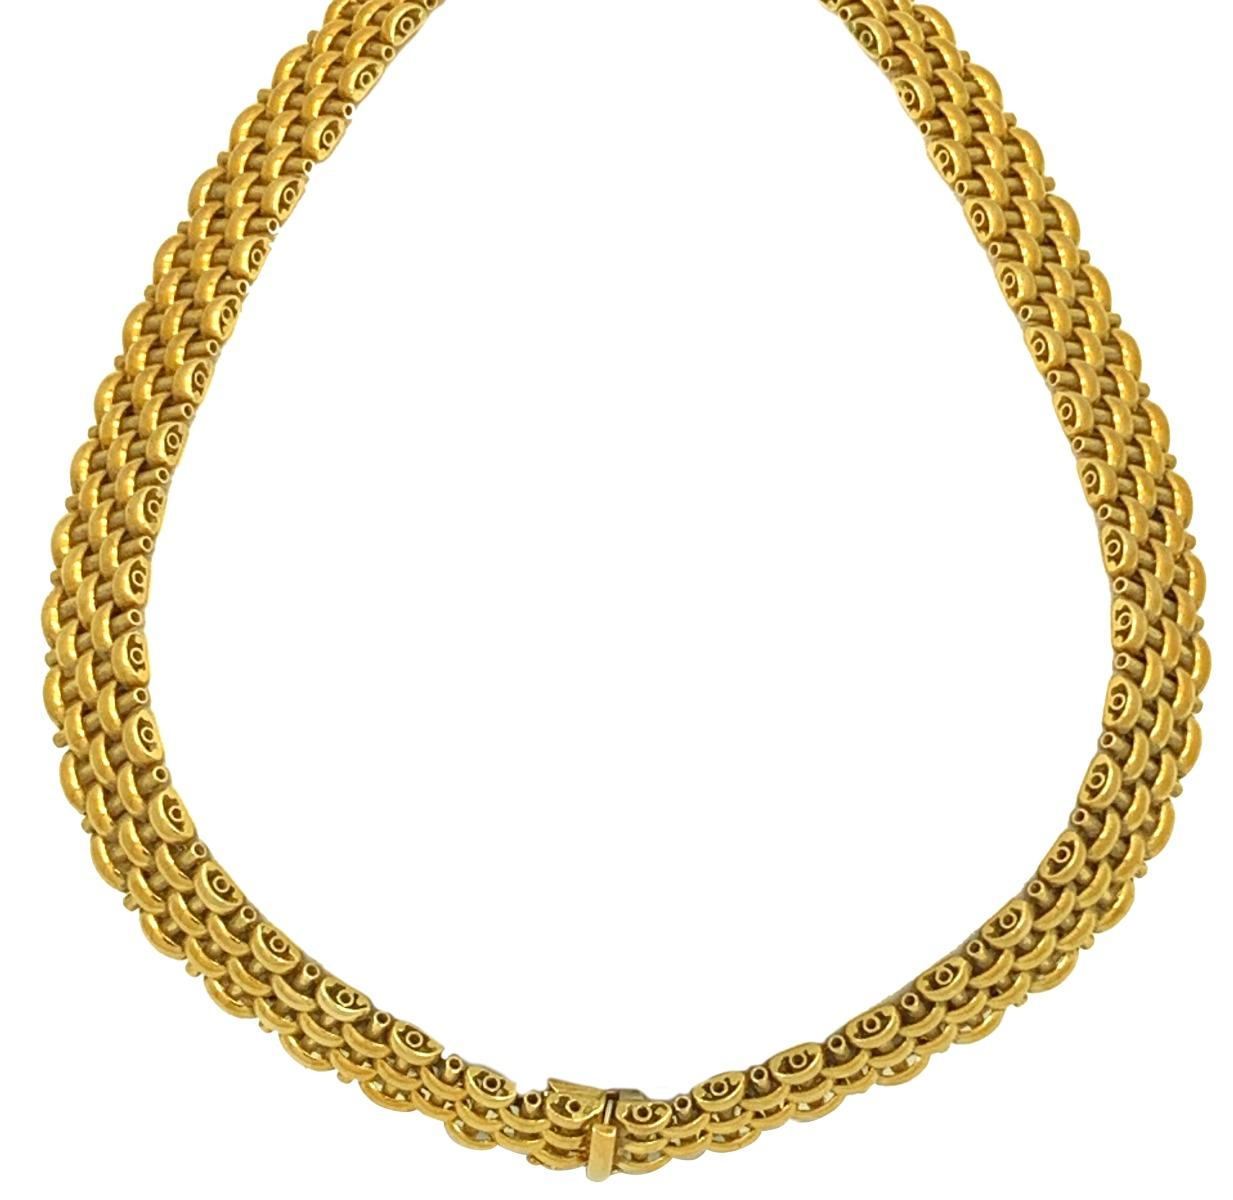 Women's or Men's 18 Karat Yellow Gold Italian Brick Link Necklace